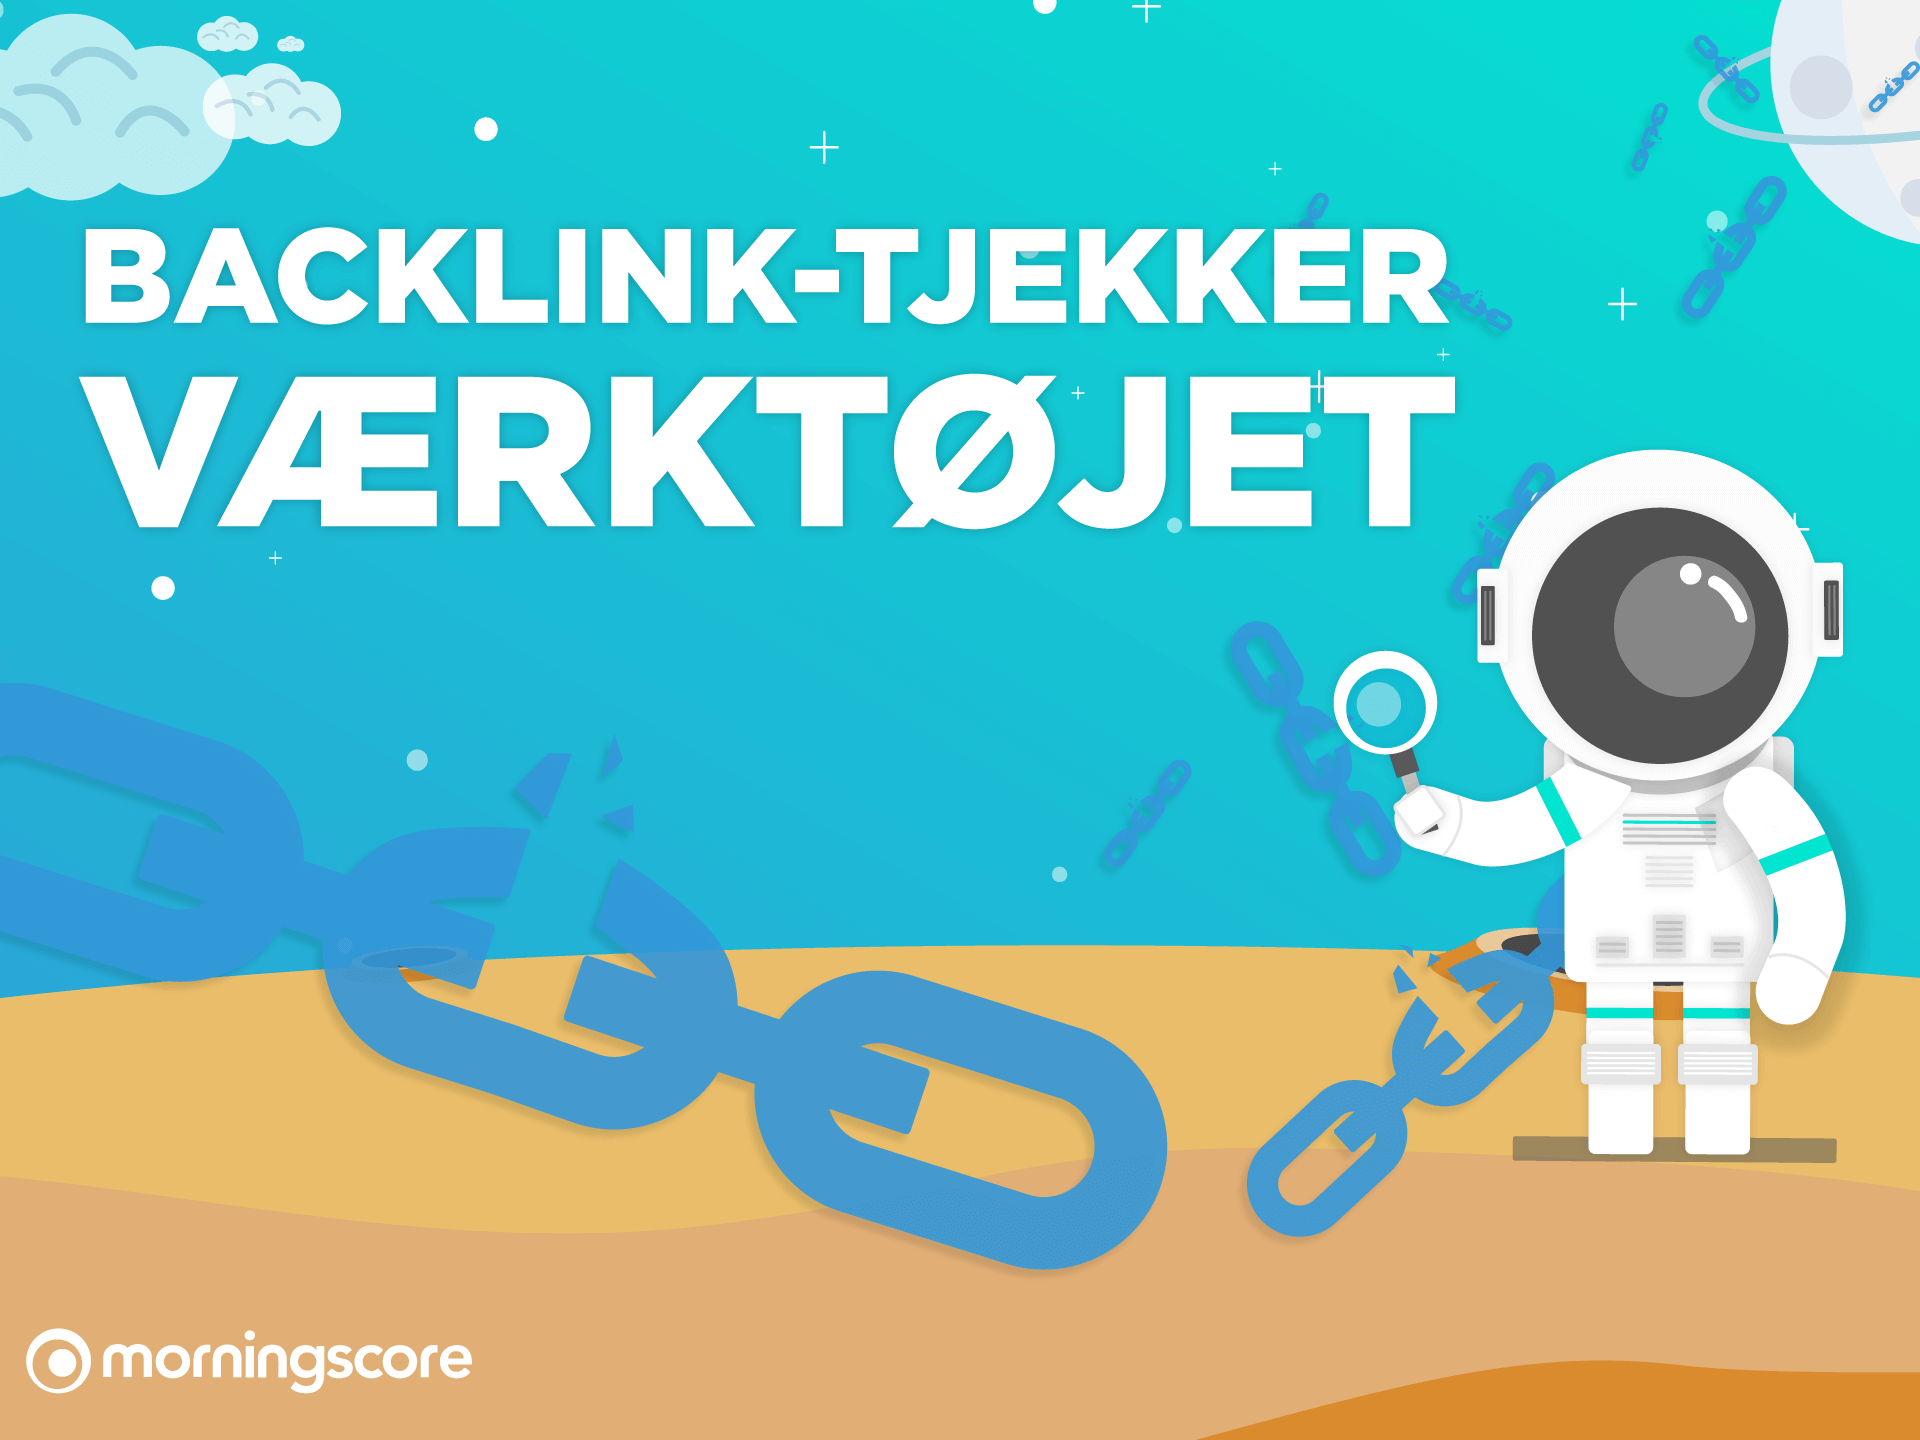 featured image morningscore er en backlink tjekker værktøj or a backlink checker and linkbuilding tool